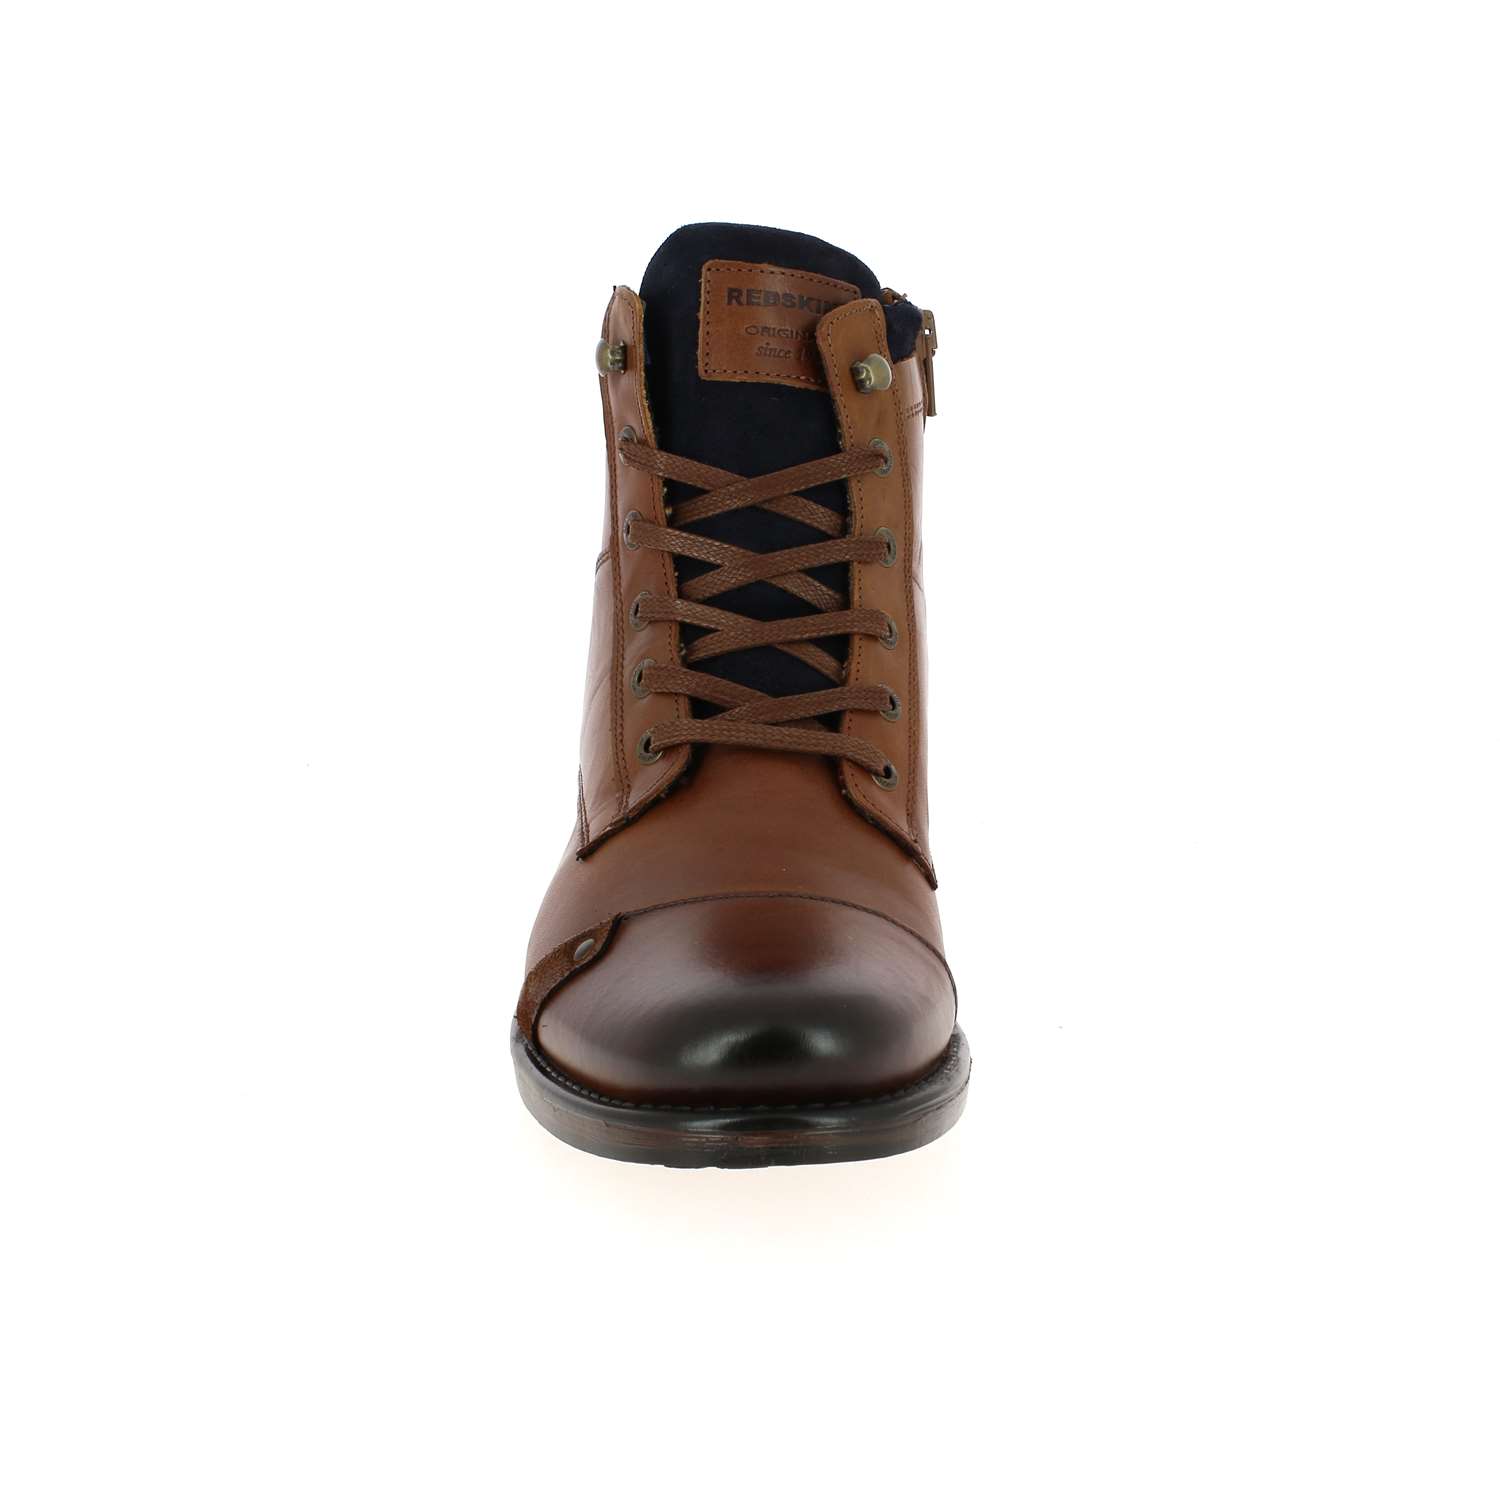 03 - YANI - CLEON - Boots et bottines - Cuir